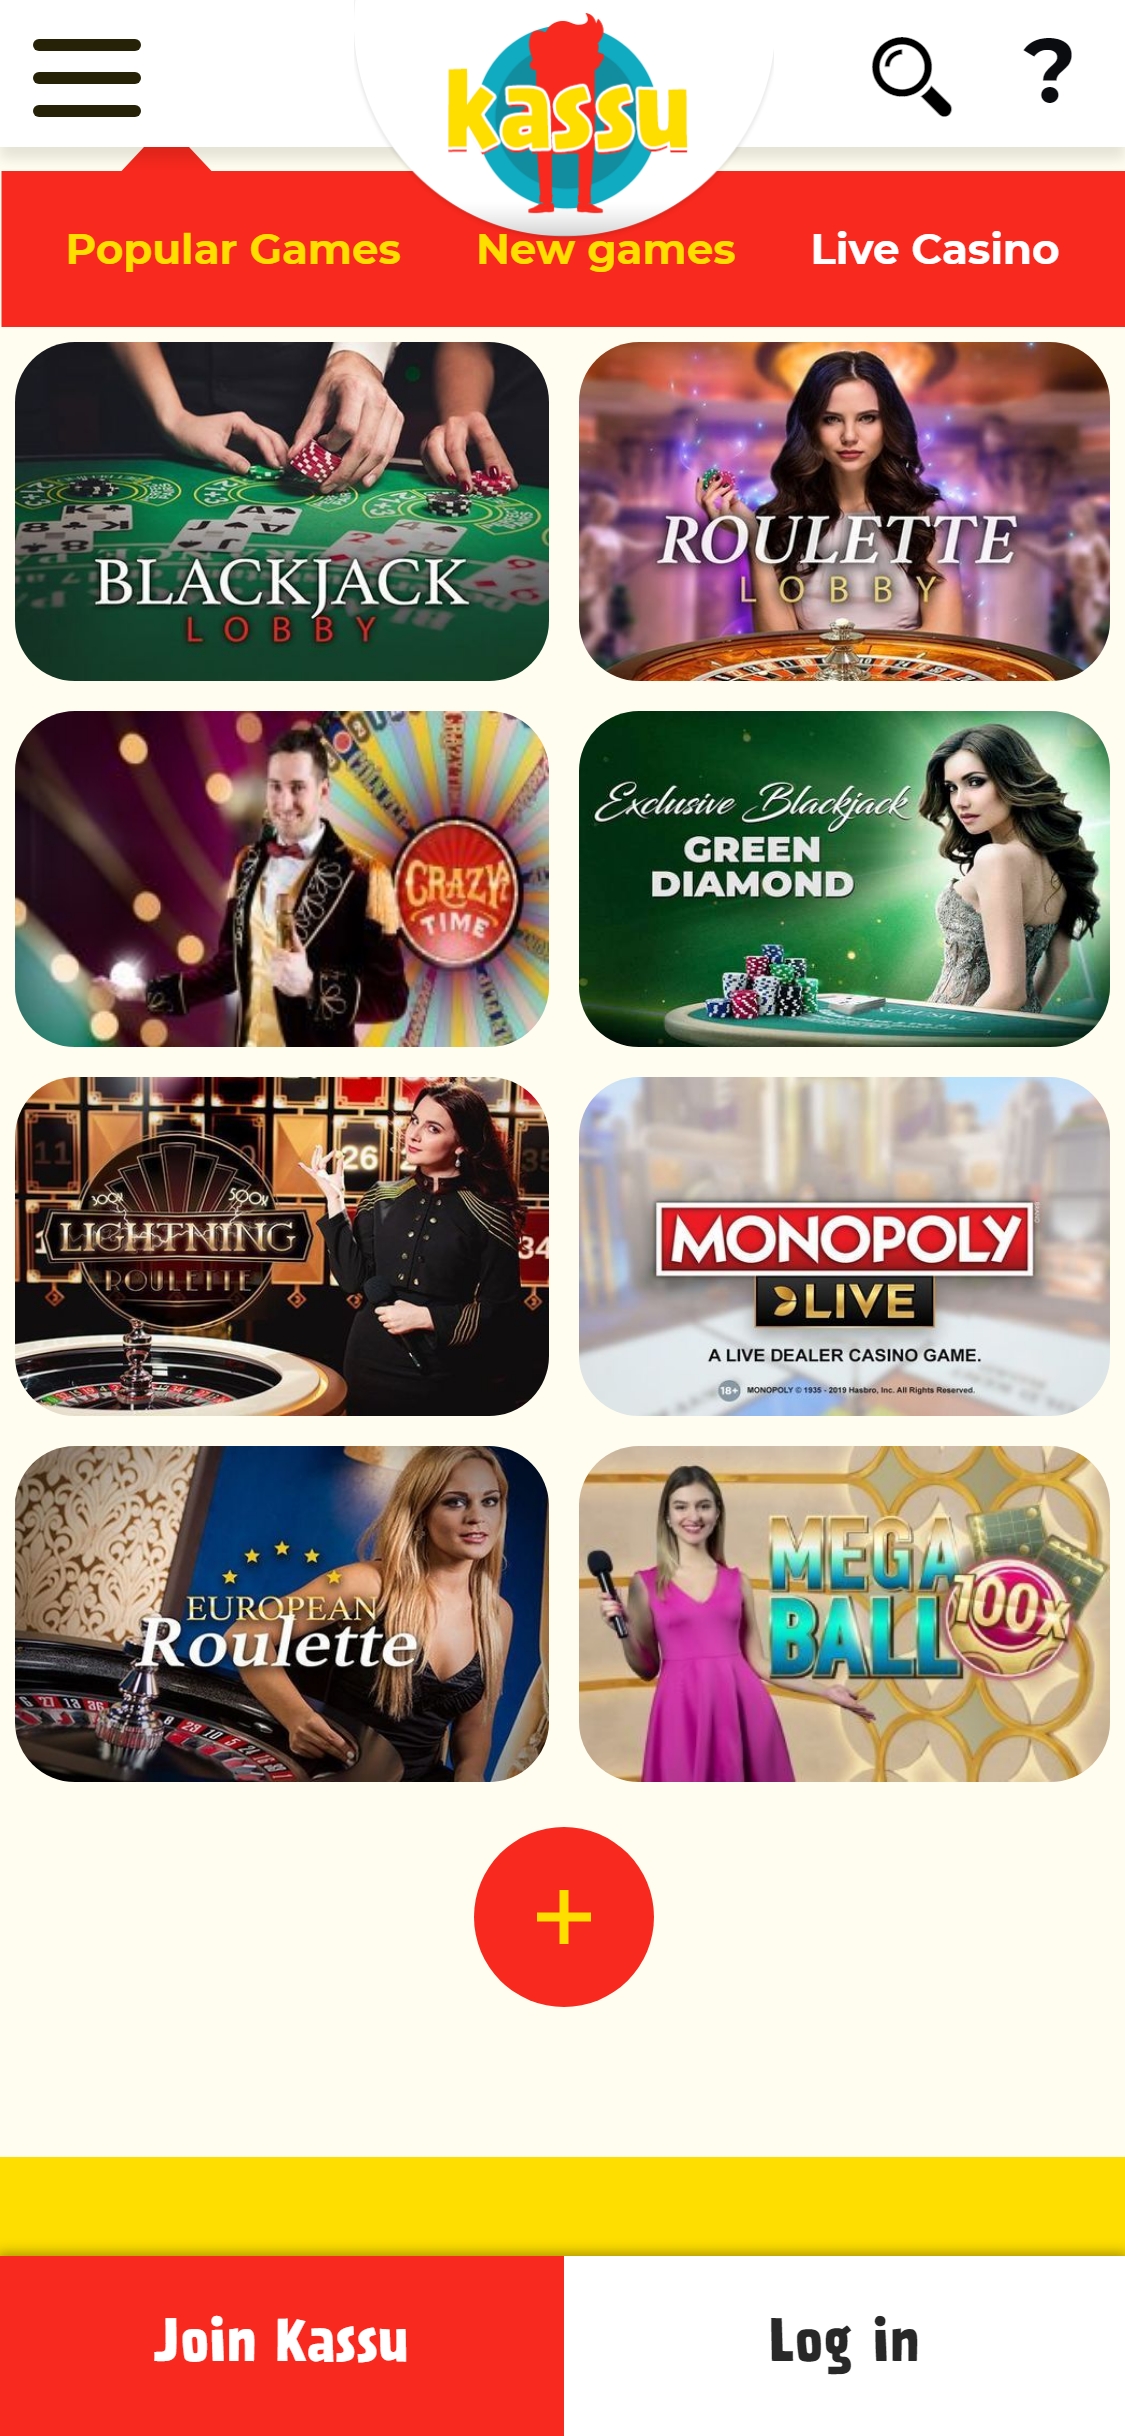 Kassu Casino Mobile Live Dealer Games Review